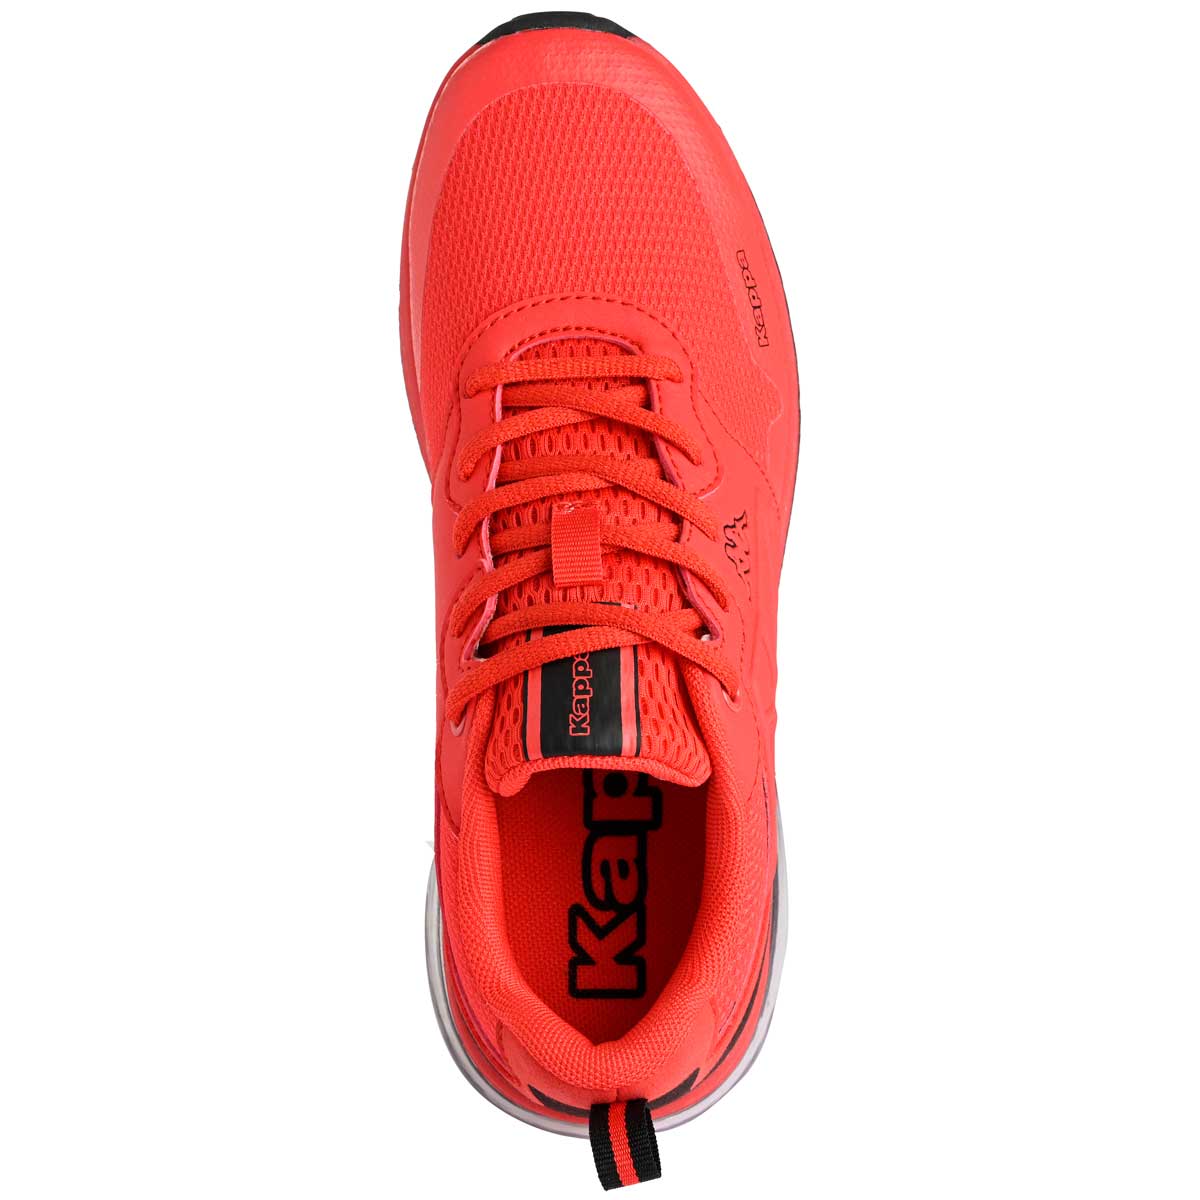 Sneakers Splinter Lace Rojo Niño